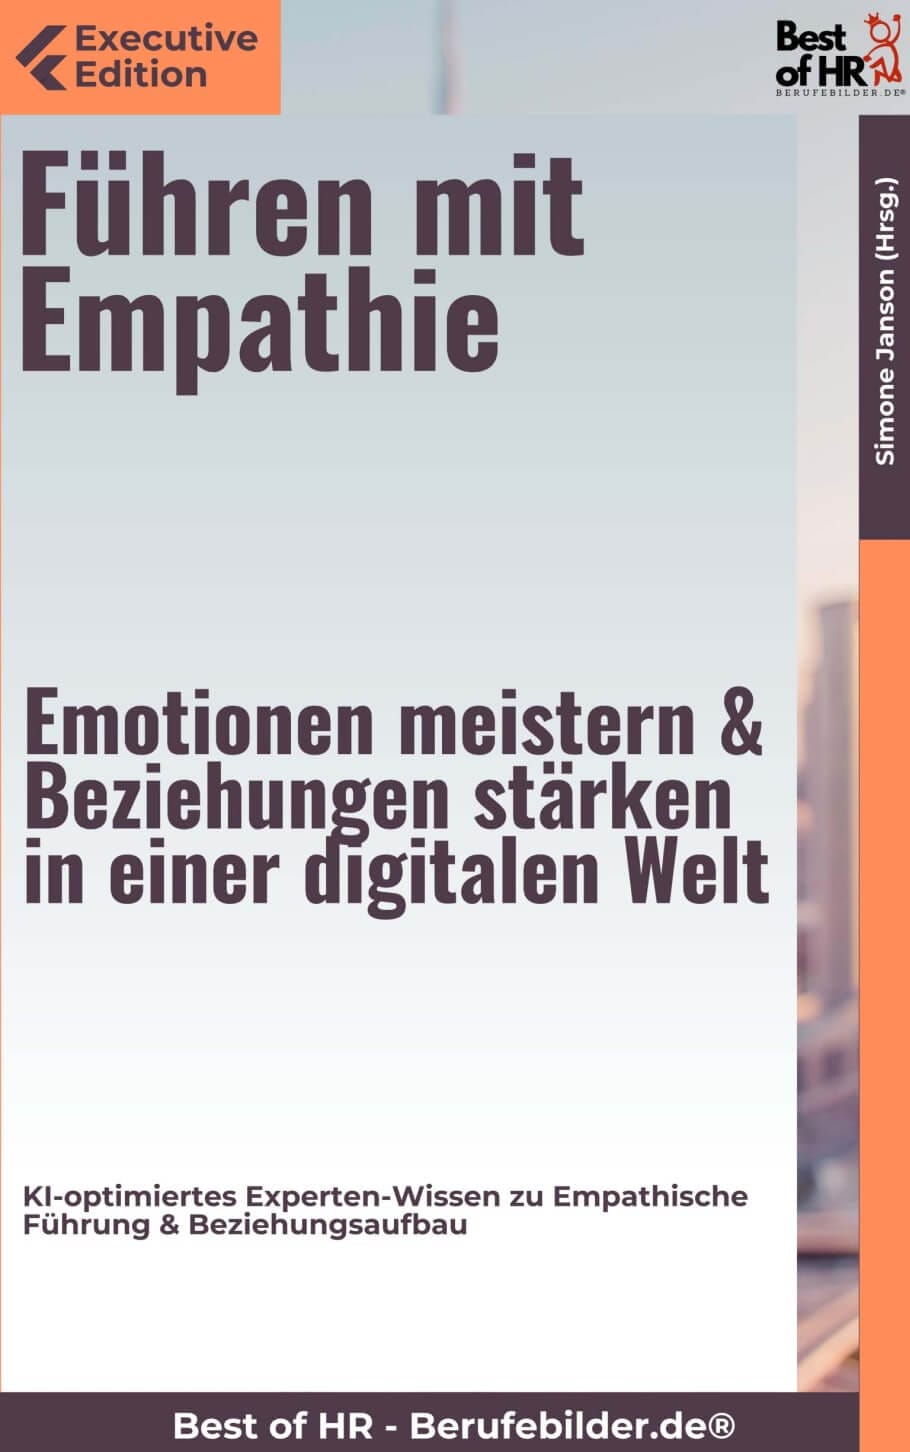 Führen mit Empathie – Emotionen meistern & Beziehungen stärken in einer digitalen Welt